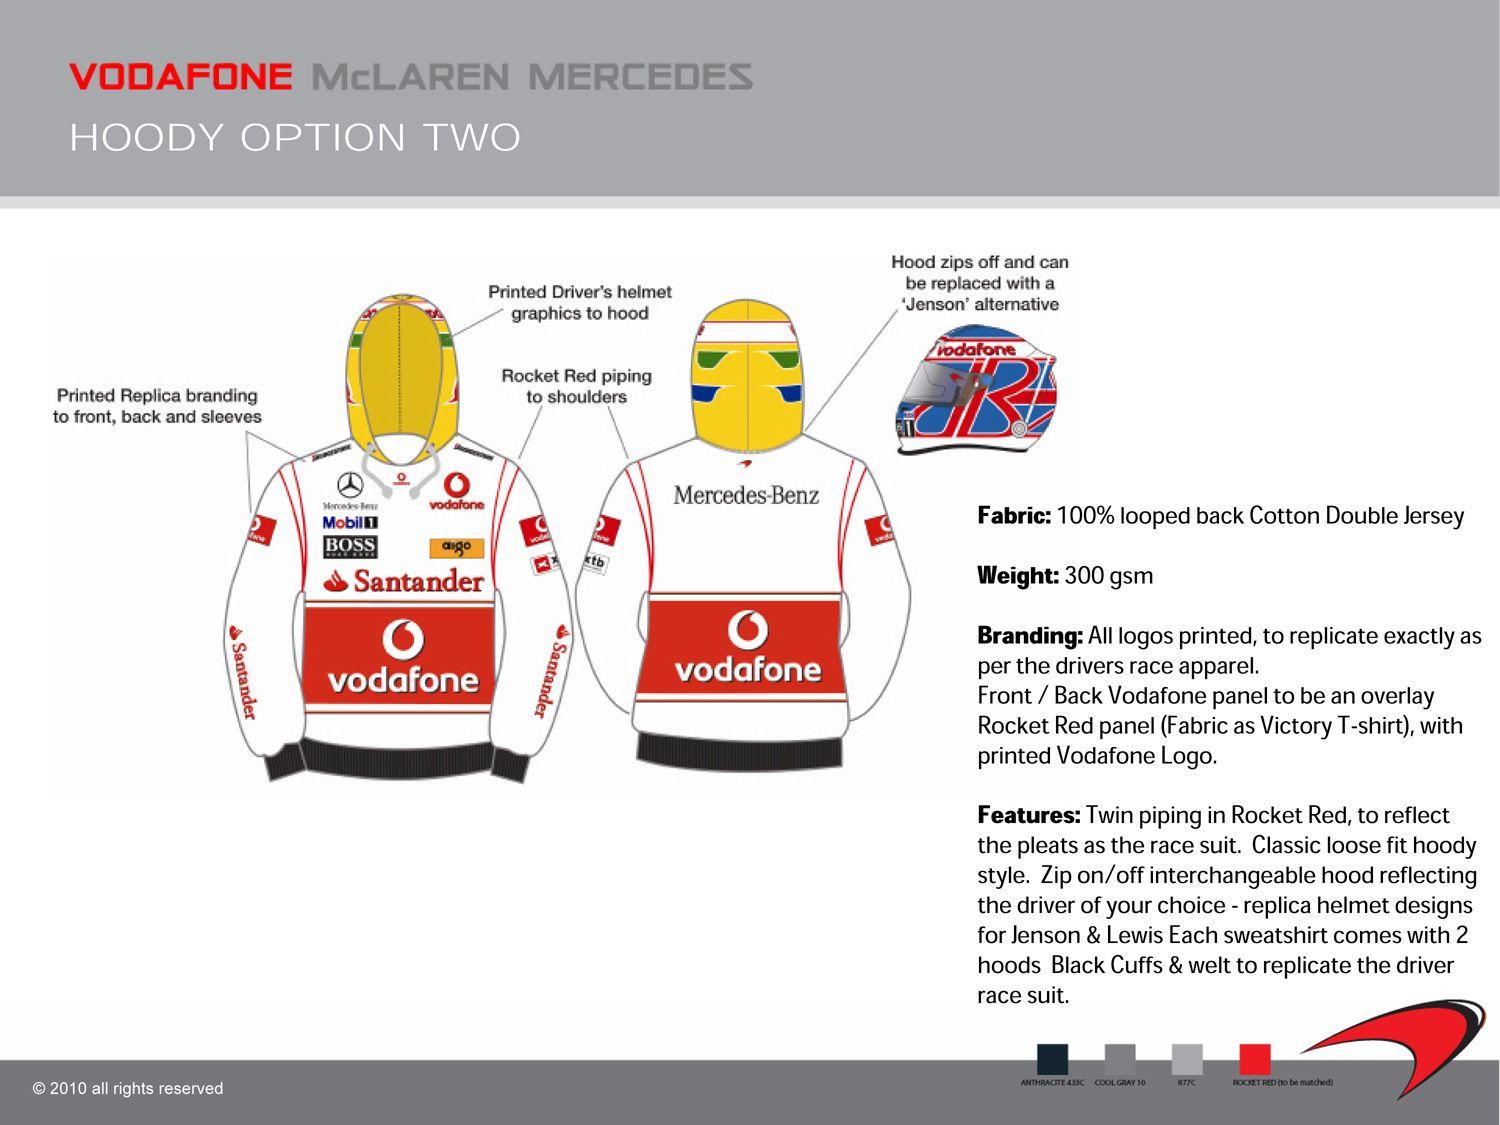 McLaren Vodafone Logo - McLaren Merchandise | McLaren Fan Blog